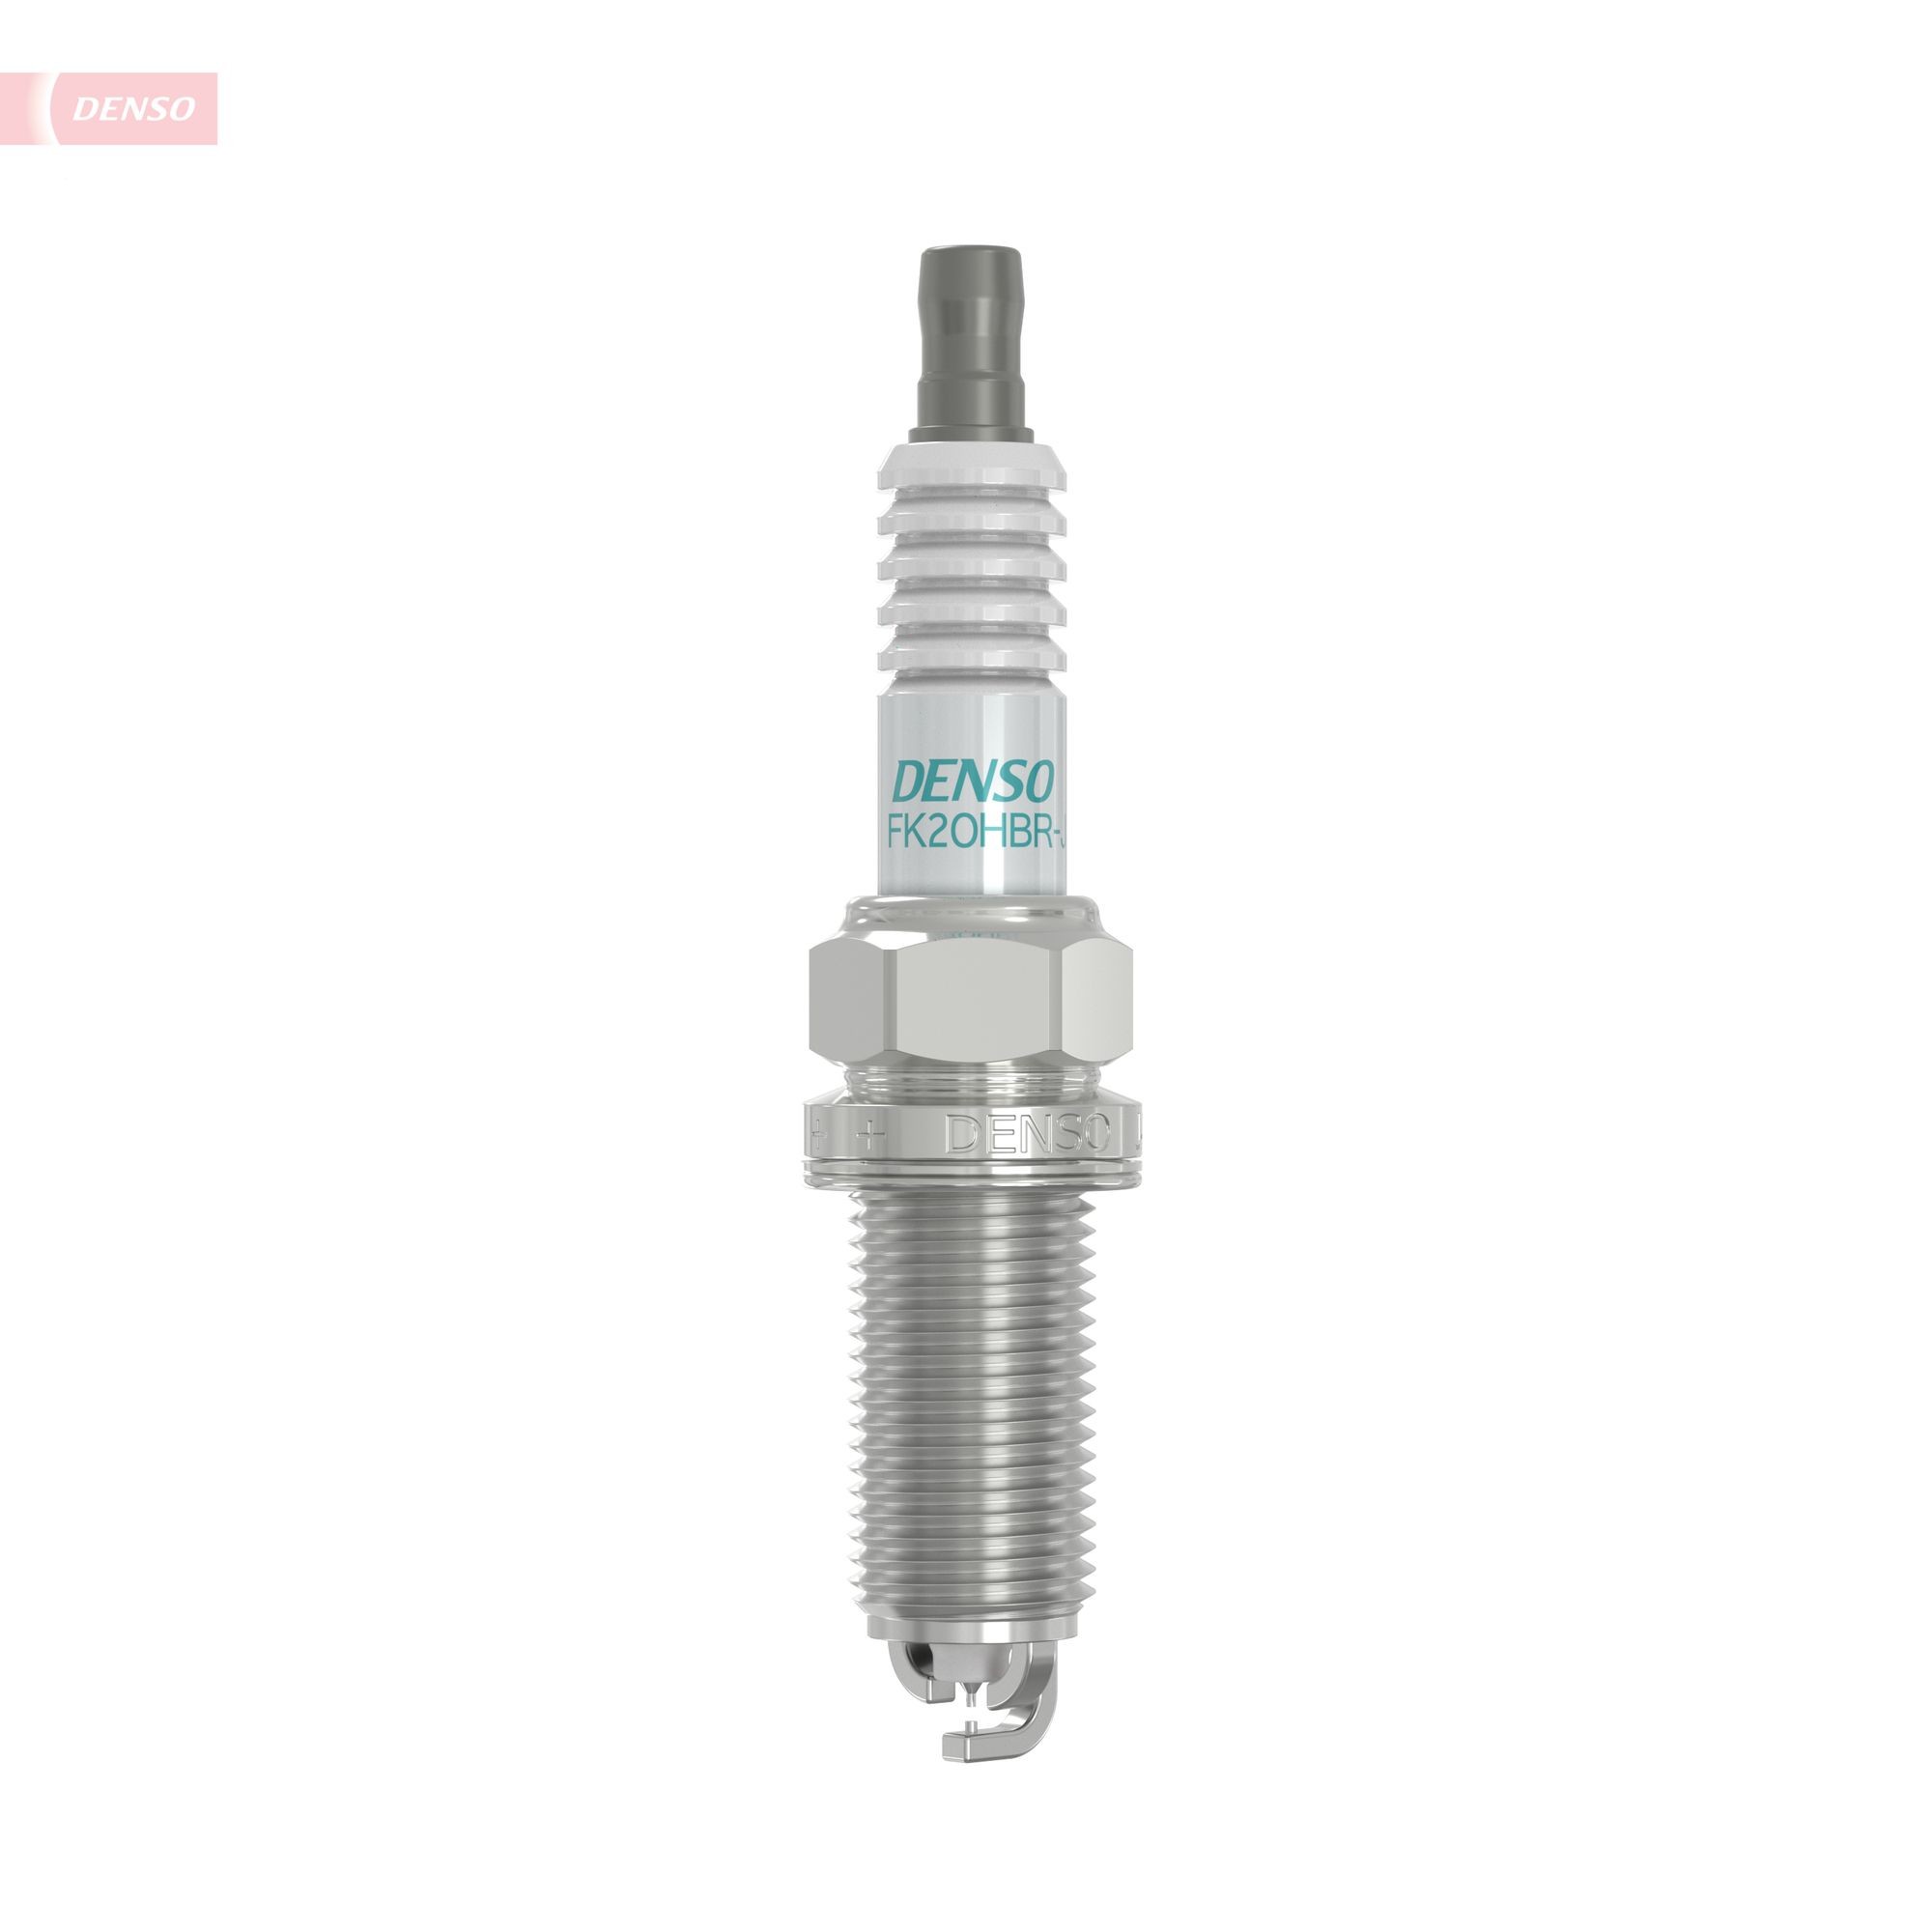 DENSO Super Ignition Plug FK20HBR-J8 Spark plug Spanner Size: 16